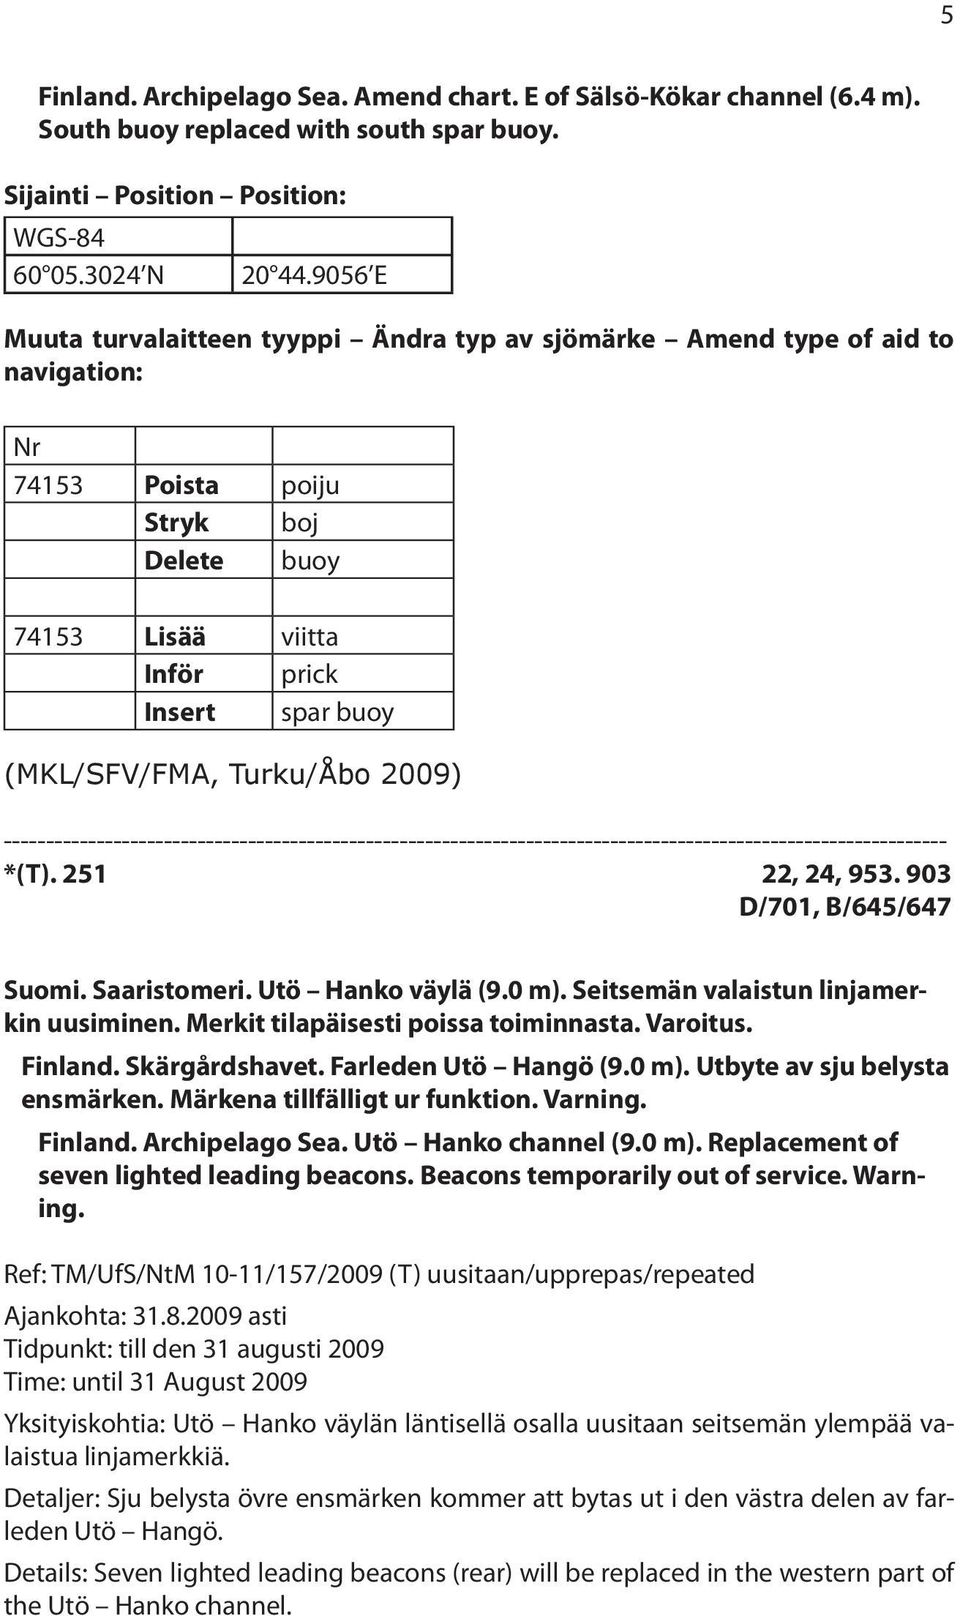 Turku/Åbo 2009) *(T). 251 22, 24, 953. 903 D/701, B/645/647 Suomi. Saaristomeri. Utö Hanko väylä (9.0 m). Seitsemän valaistun linjamerkin uusiminen. Merkit tilapäisesti poissa toiminnasta. Varoitus.